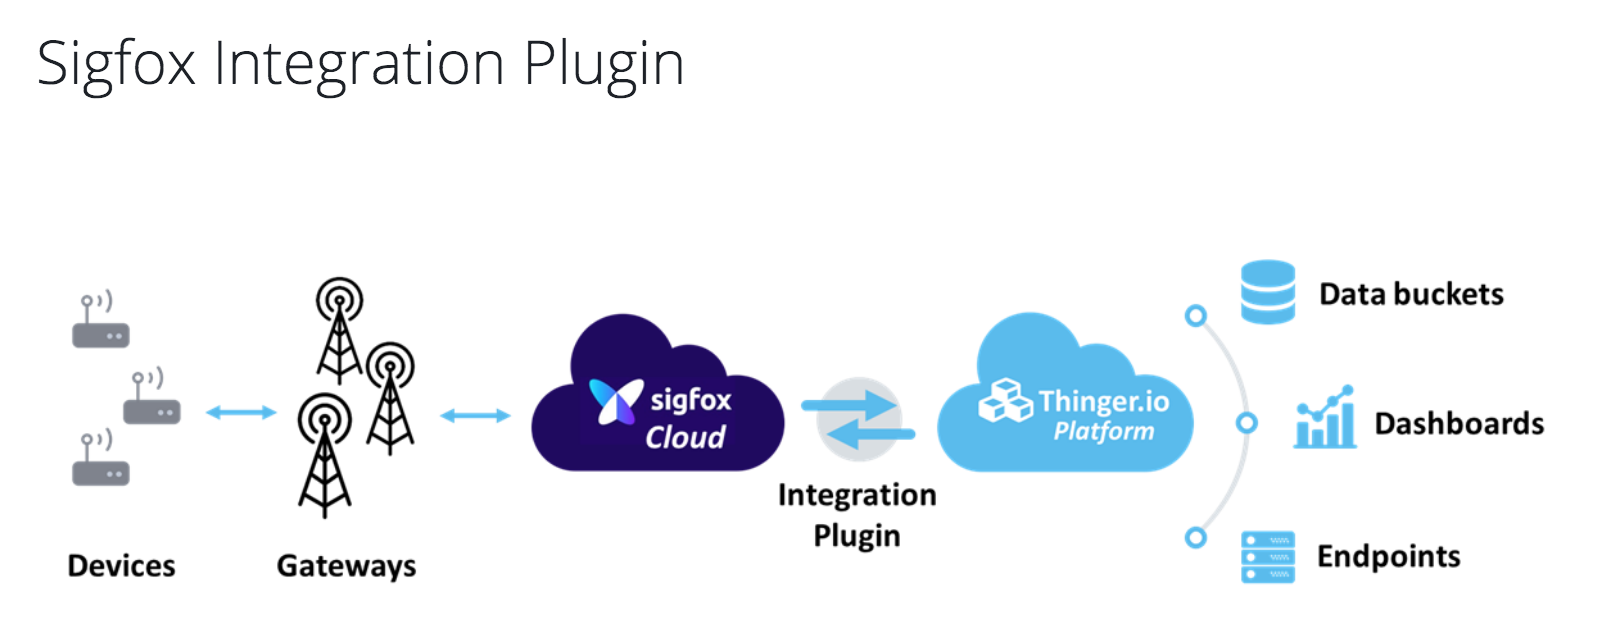 Buenas noticias para los desarrolladores de Sigfox con el Sigfox Integration Plugin